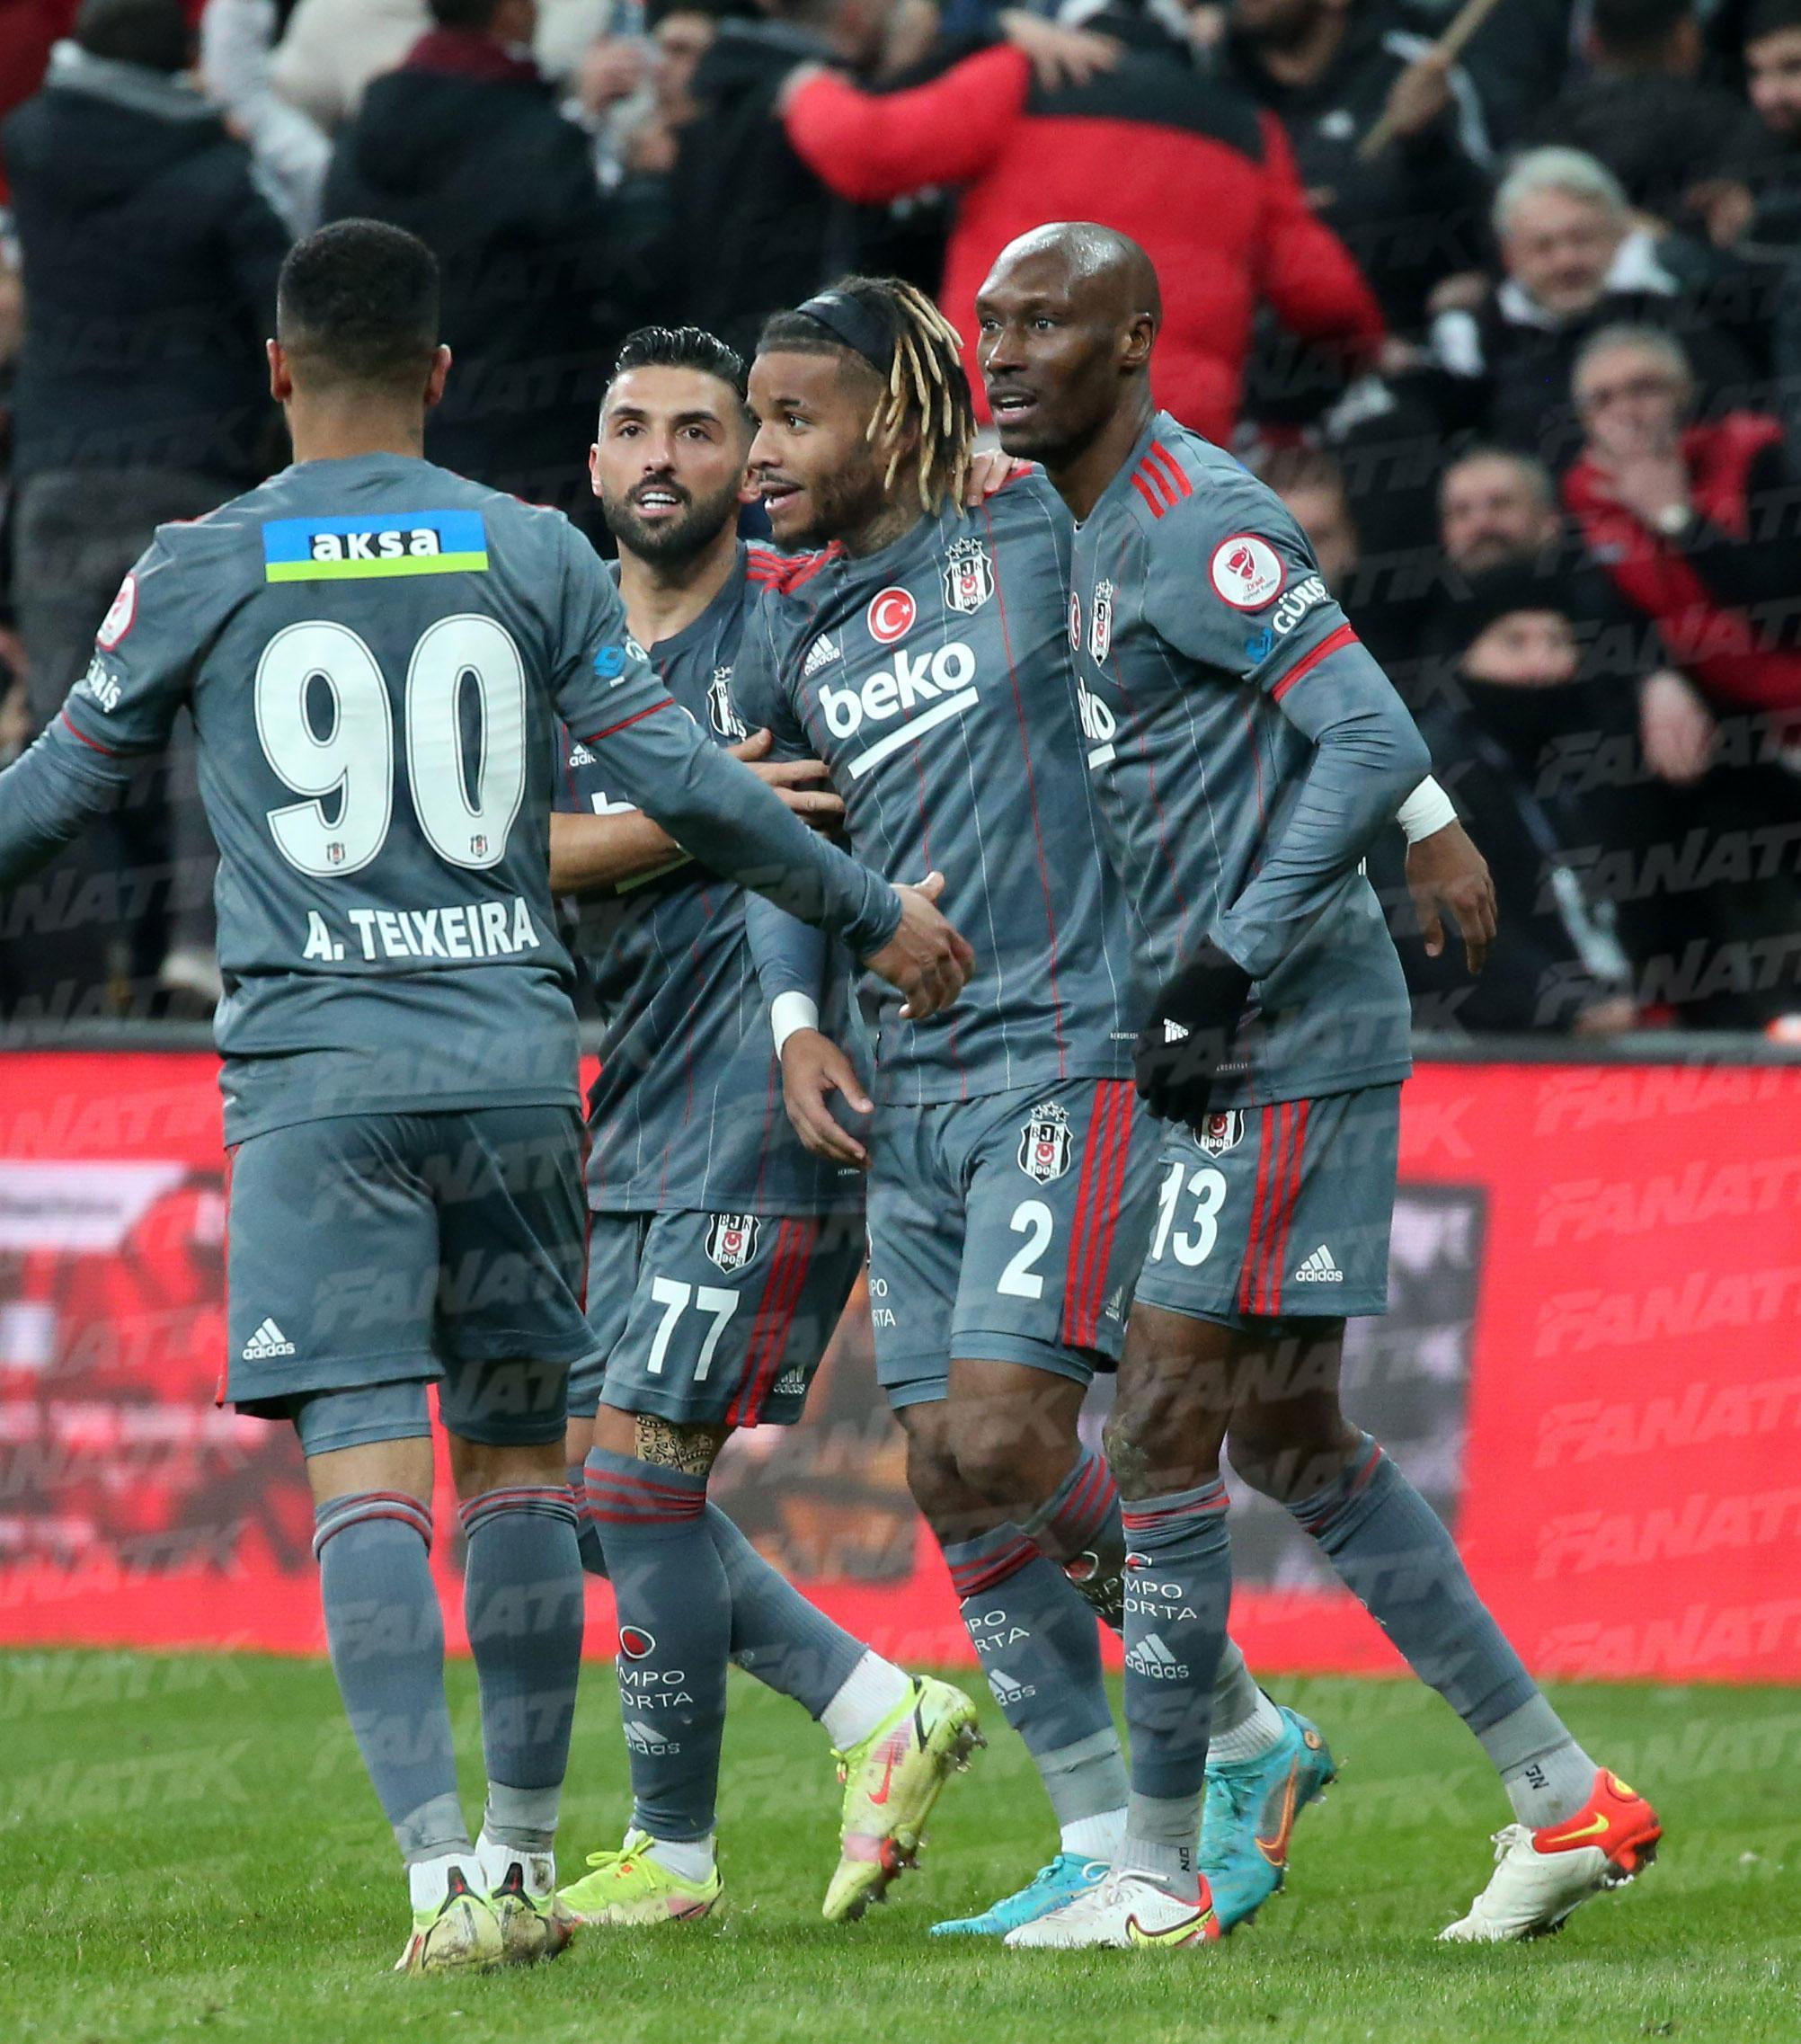 (ÖZET) Beşiktaş - Kayserispor maç sonucu: 1-2